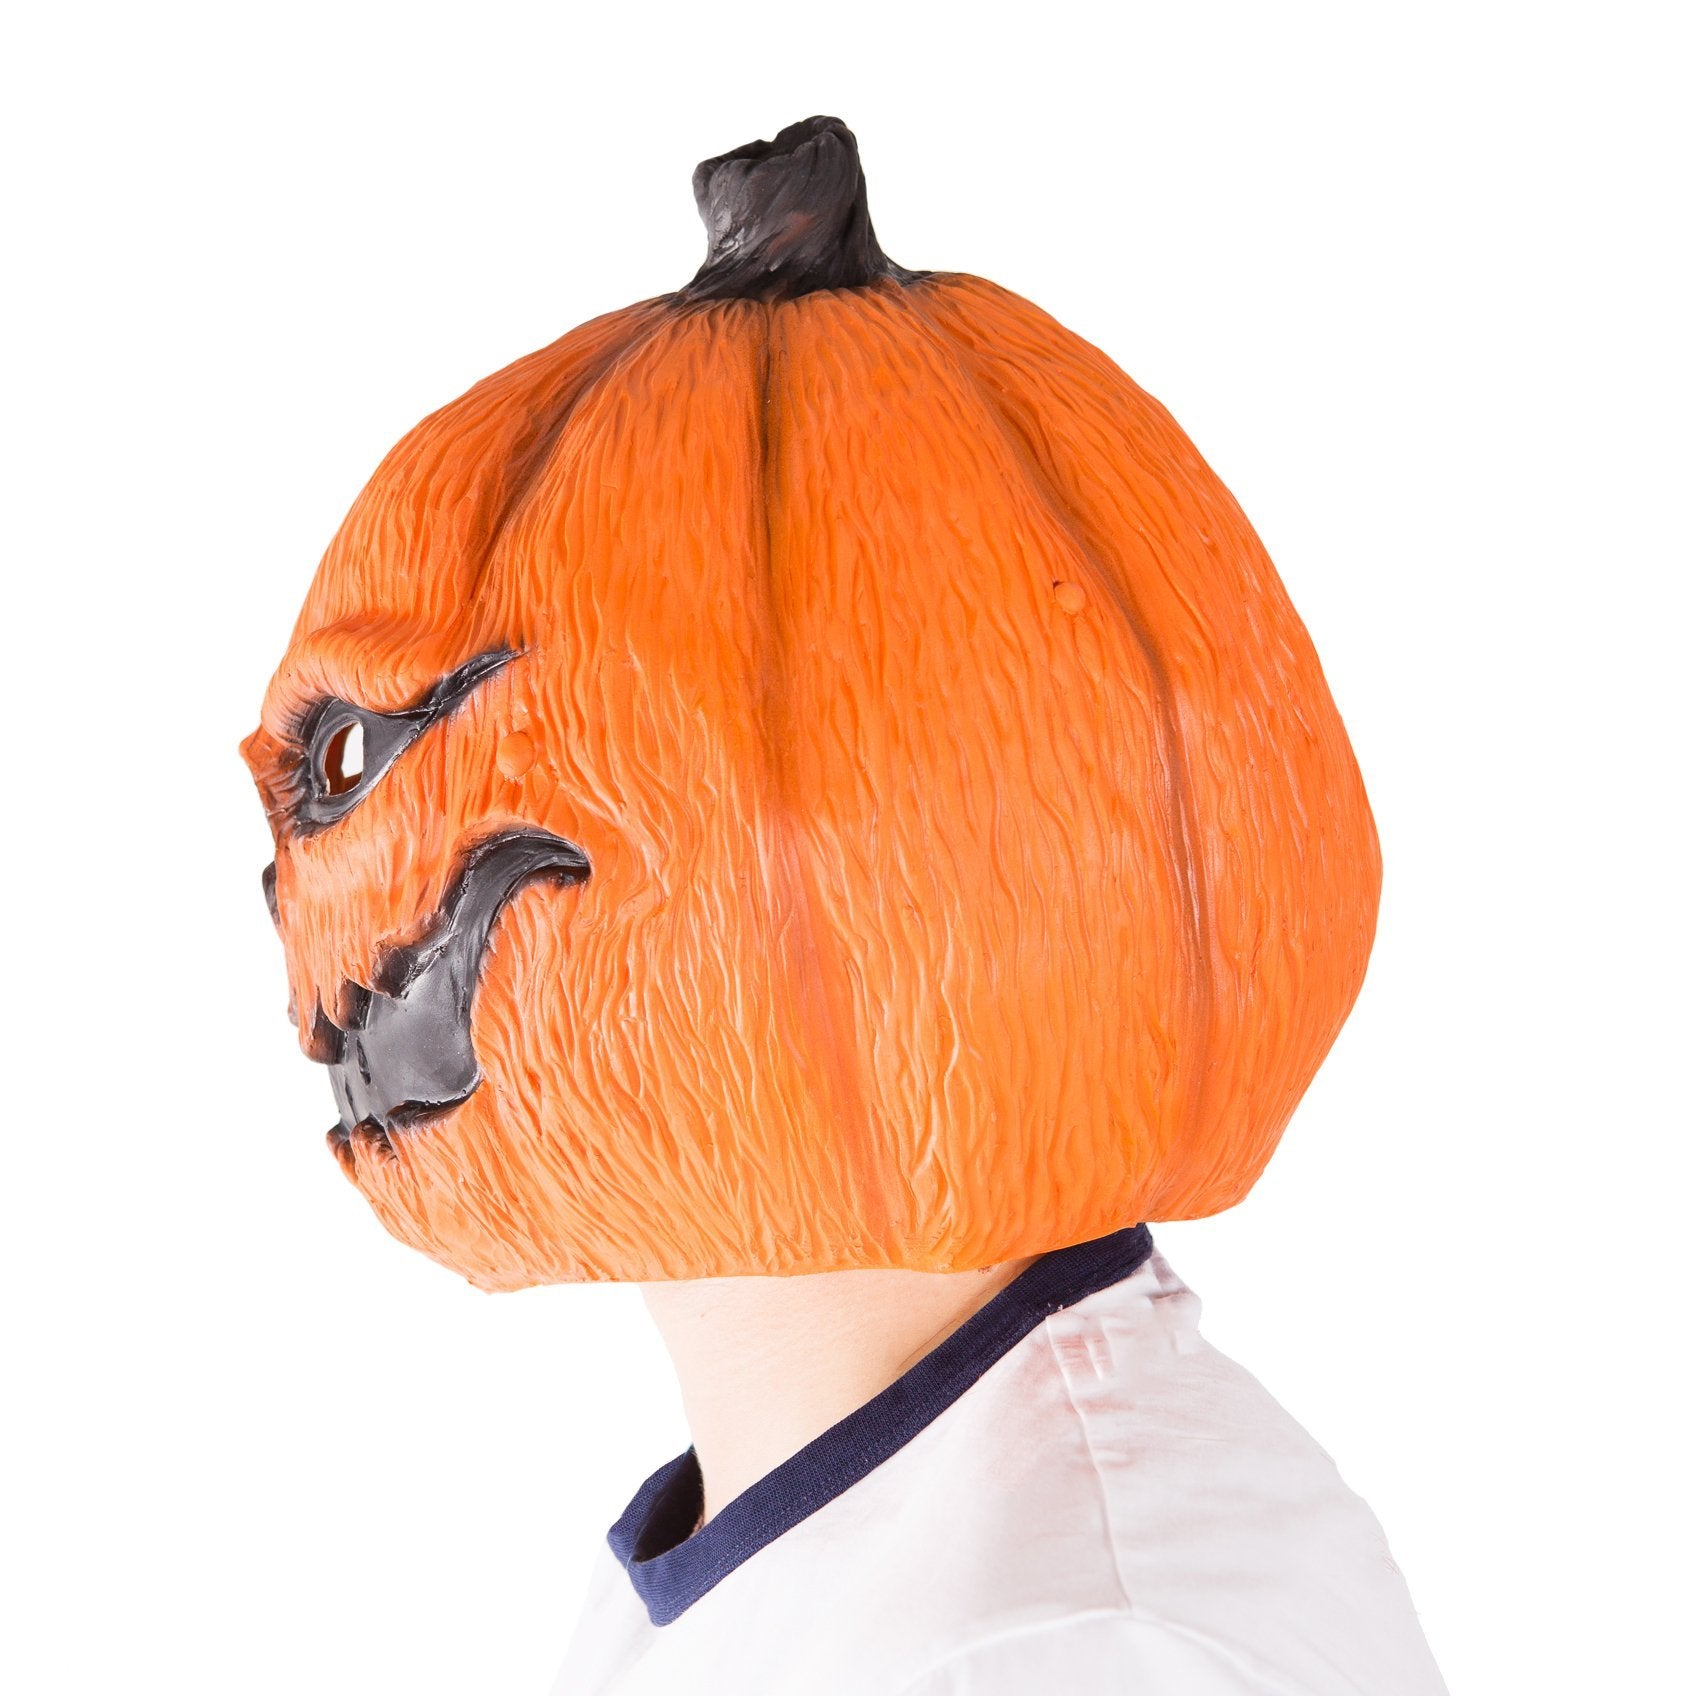 Pumpkin Masks Halloween Costume Party Props Pumpkin Head Mask